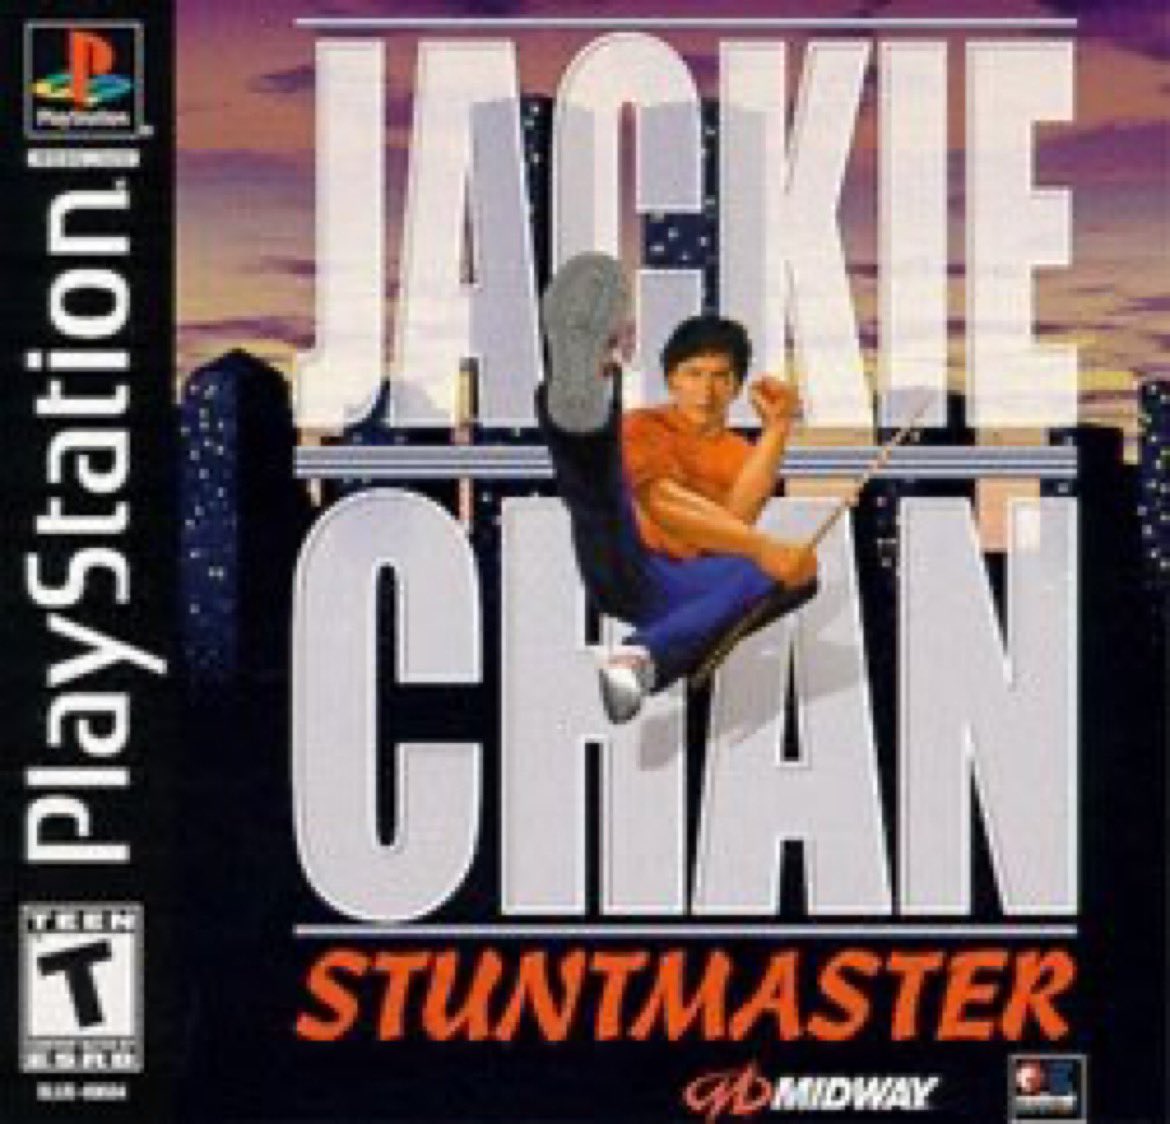 🚨:

اليوم وقبل 24 عام صدرت لعبة Jackie Chan: Stuntmaster على جهاز PS1. 

🔸 مين ما لعبها؟ 😂